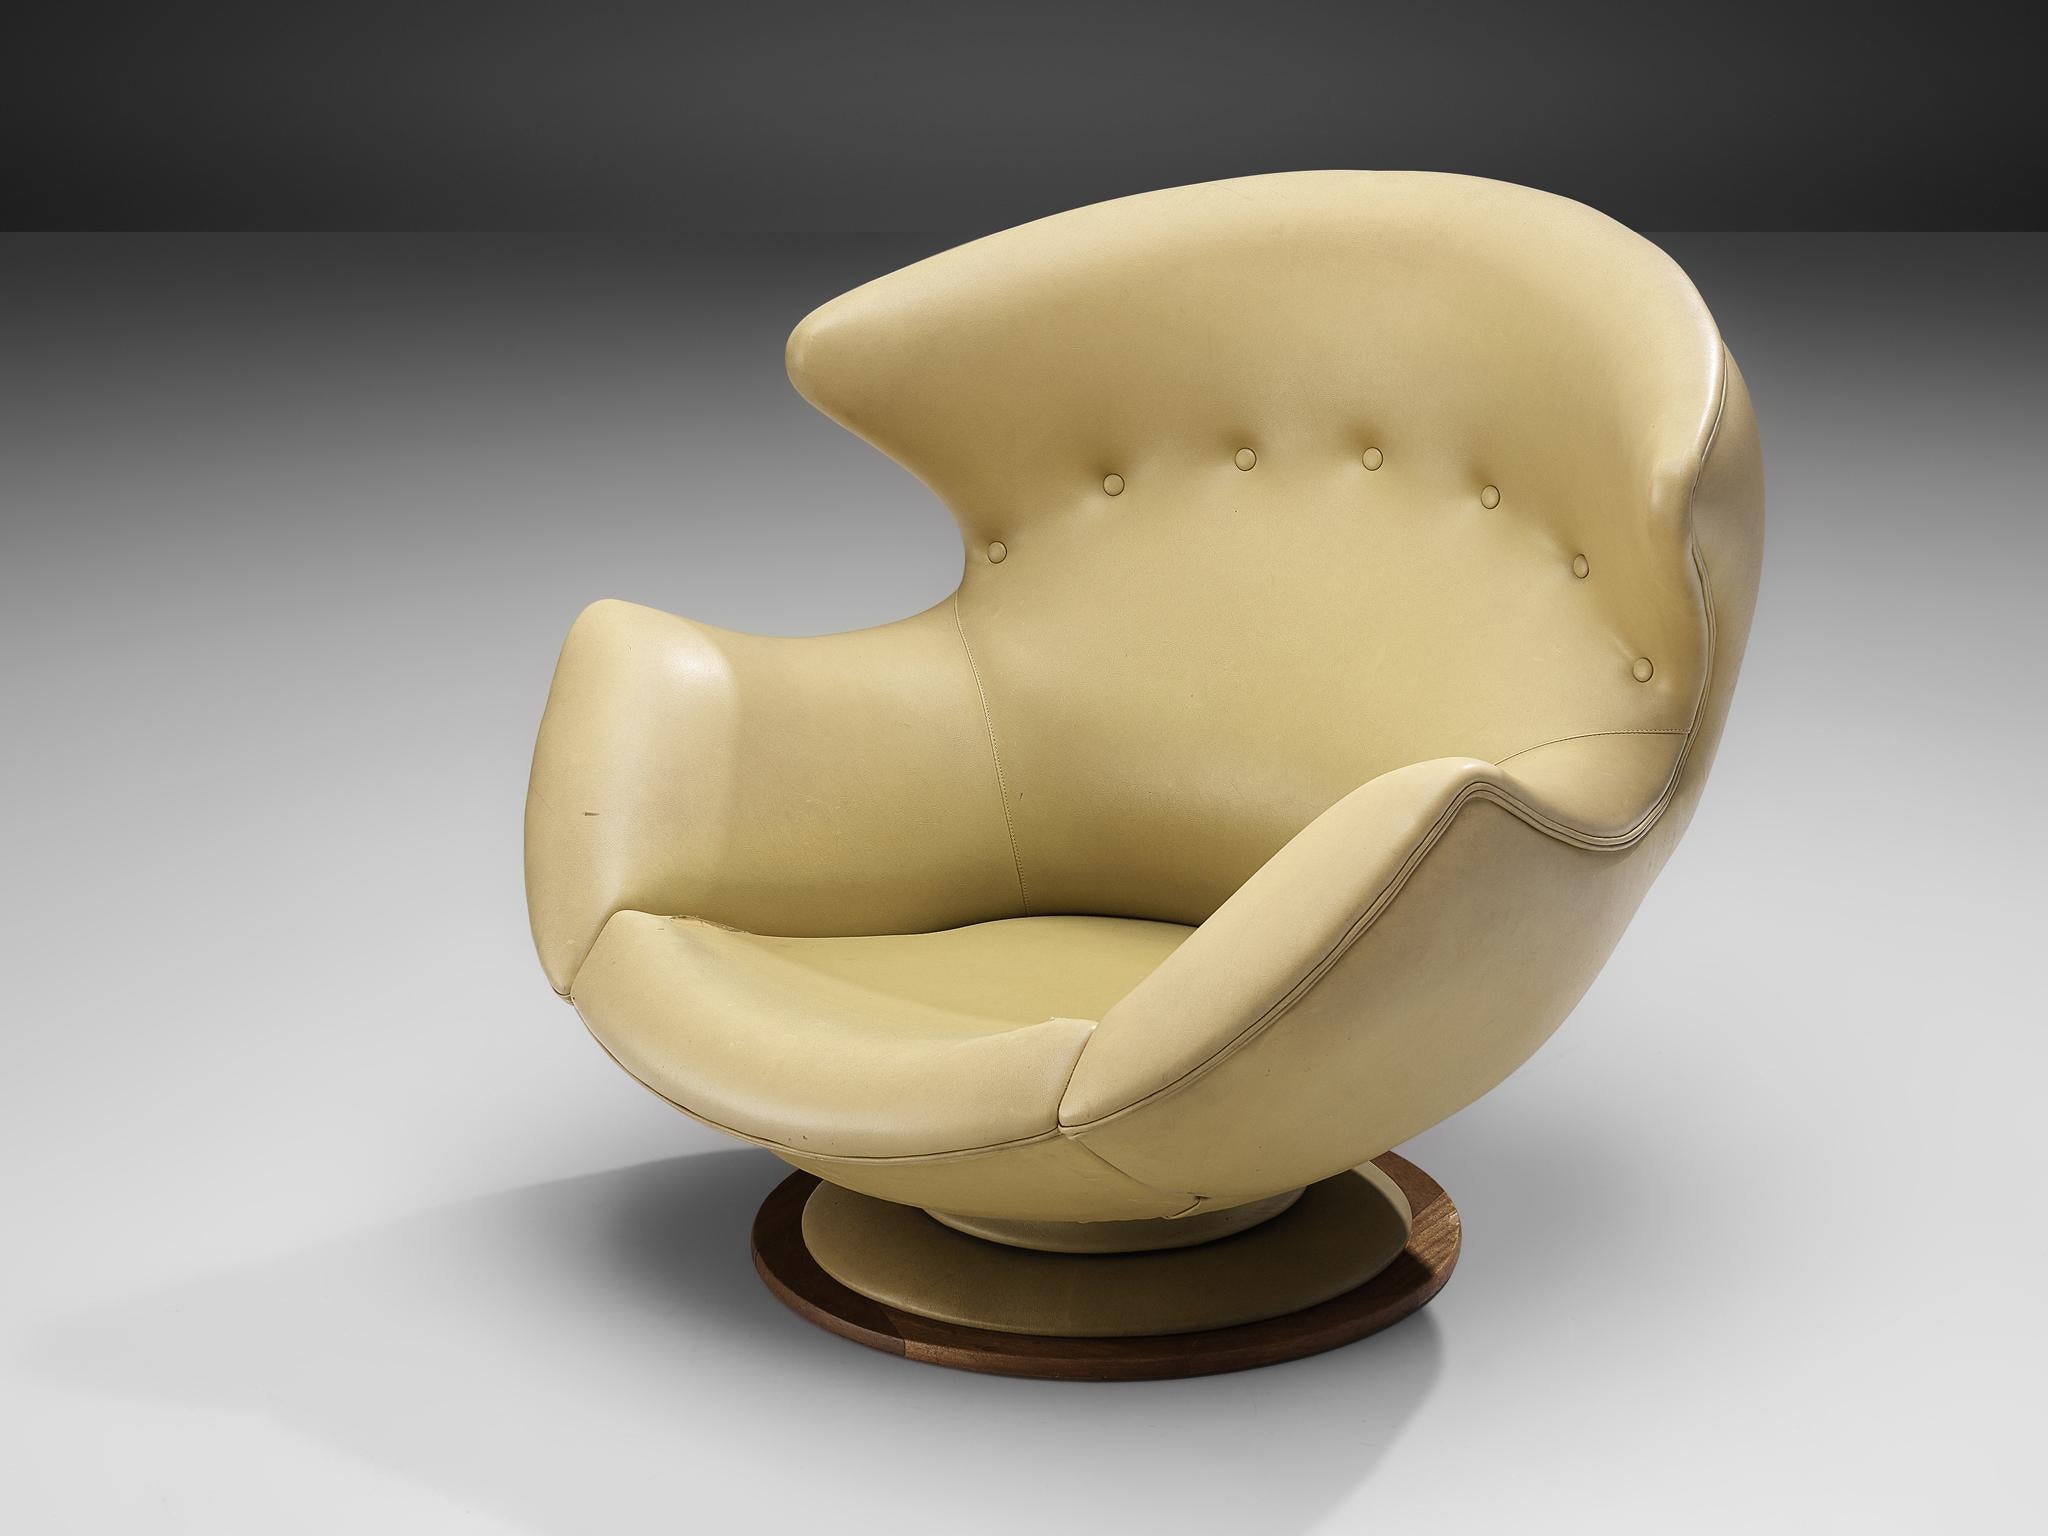 Loungesessel, Kunstleder, Holz, Italien, 1970er Jahre

Großer und bequemer Ohrensessel mit gelbem Kunstlederbezug. Die abgerundete Gesamtform des Sessels mit den bis zu den Armlehnen reichenden Flügeln sorgt dafür, dass der Sessel den Sitzenden fast